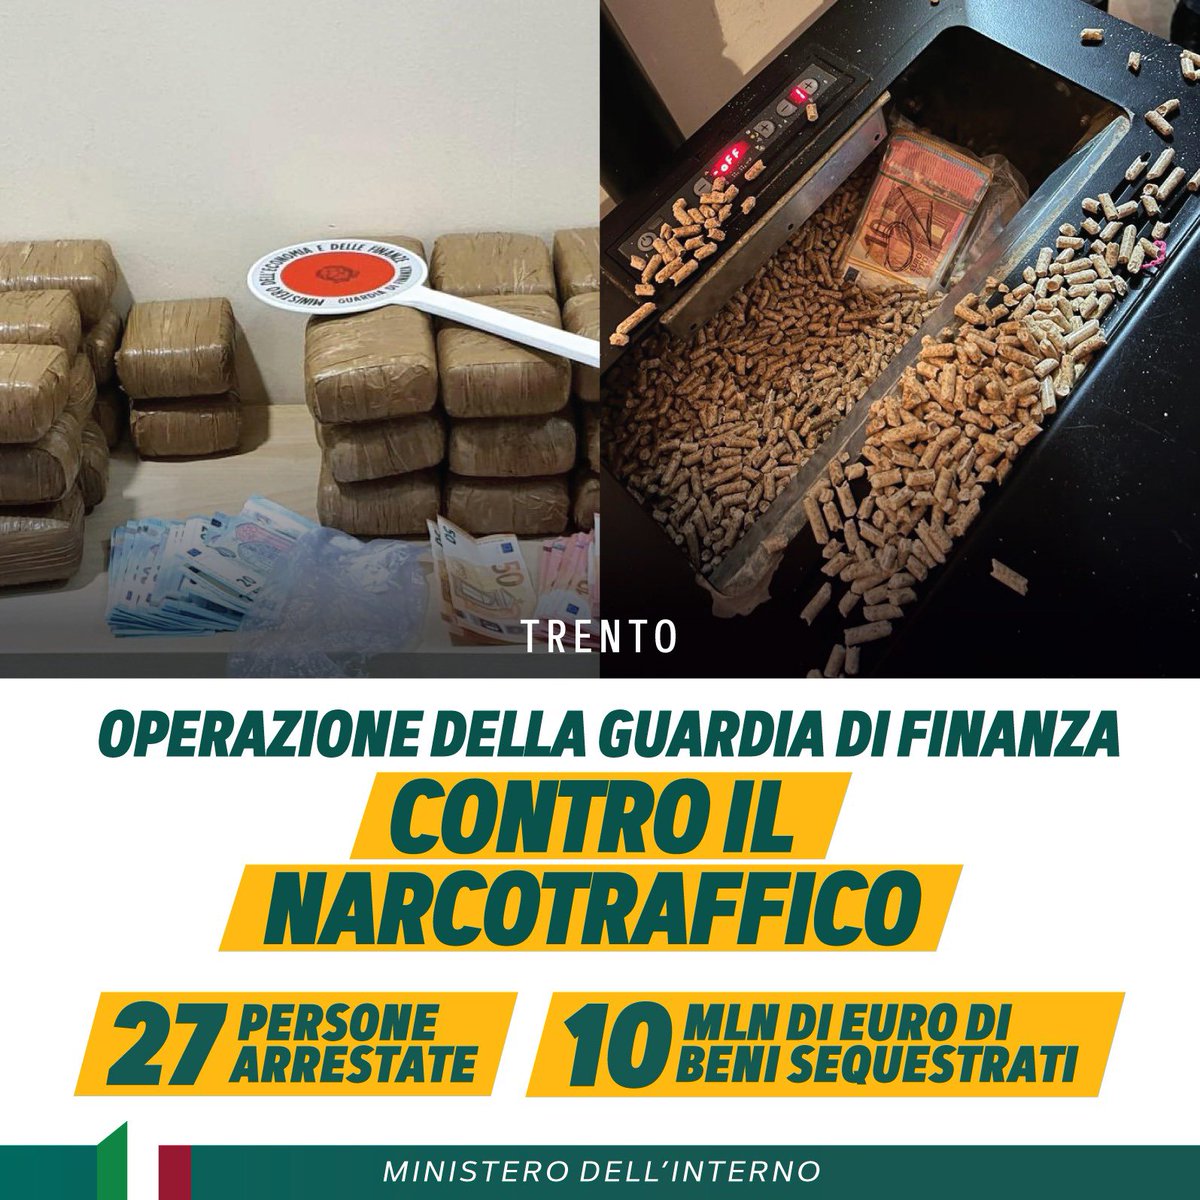 Maxi operazione contro il narcotraffico a Trento che ha portato all’arresto di 27 persone. La @GDF ha sgominato due organizzazioni criminali che, grazie a una fitta rete di corrieri e distributori, riversava ingenti quantità di droga in tutta la regione. 38 in tutto i…